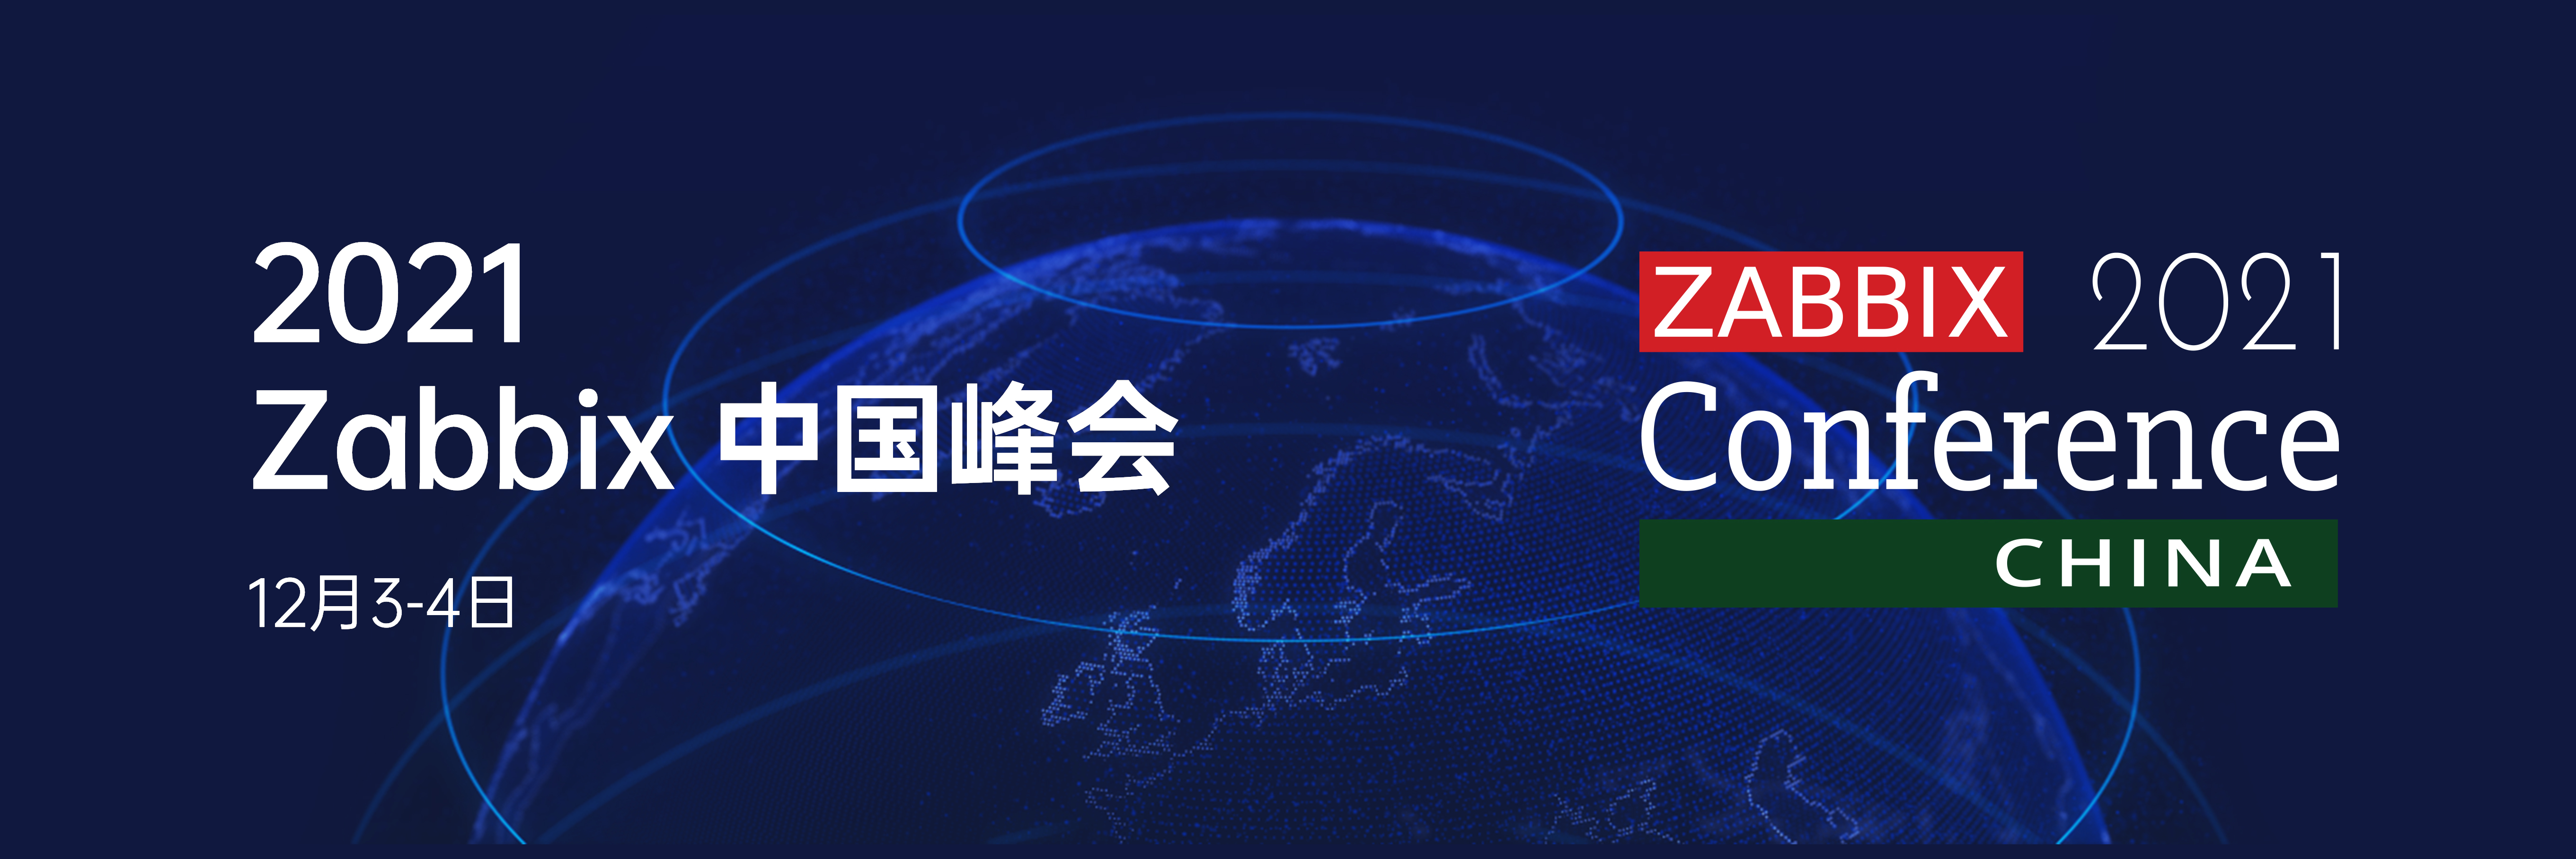 2021第六届Zabbix中国峰会